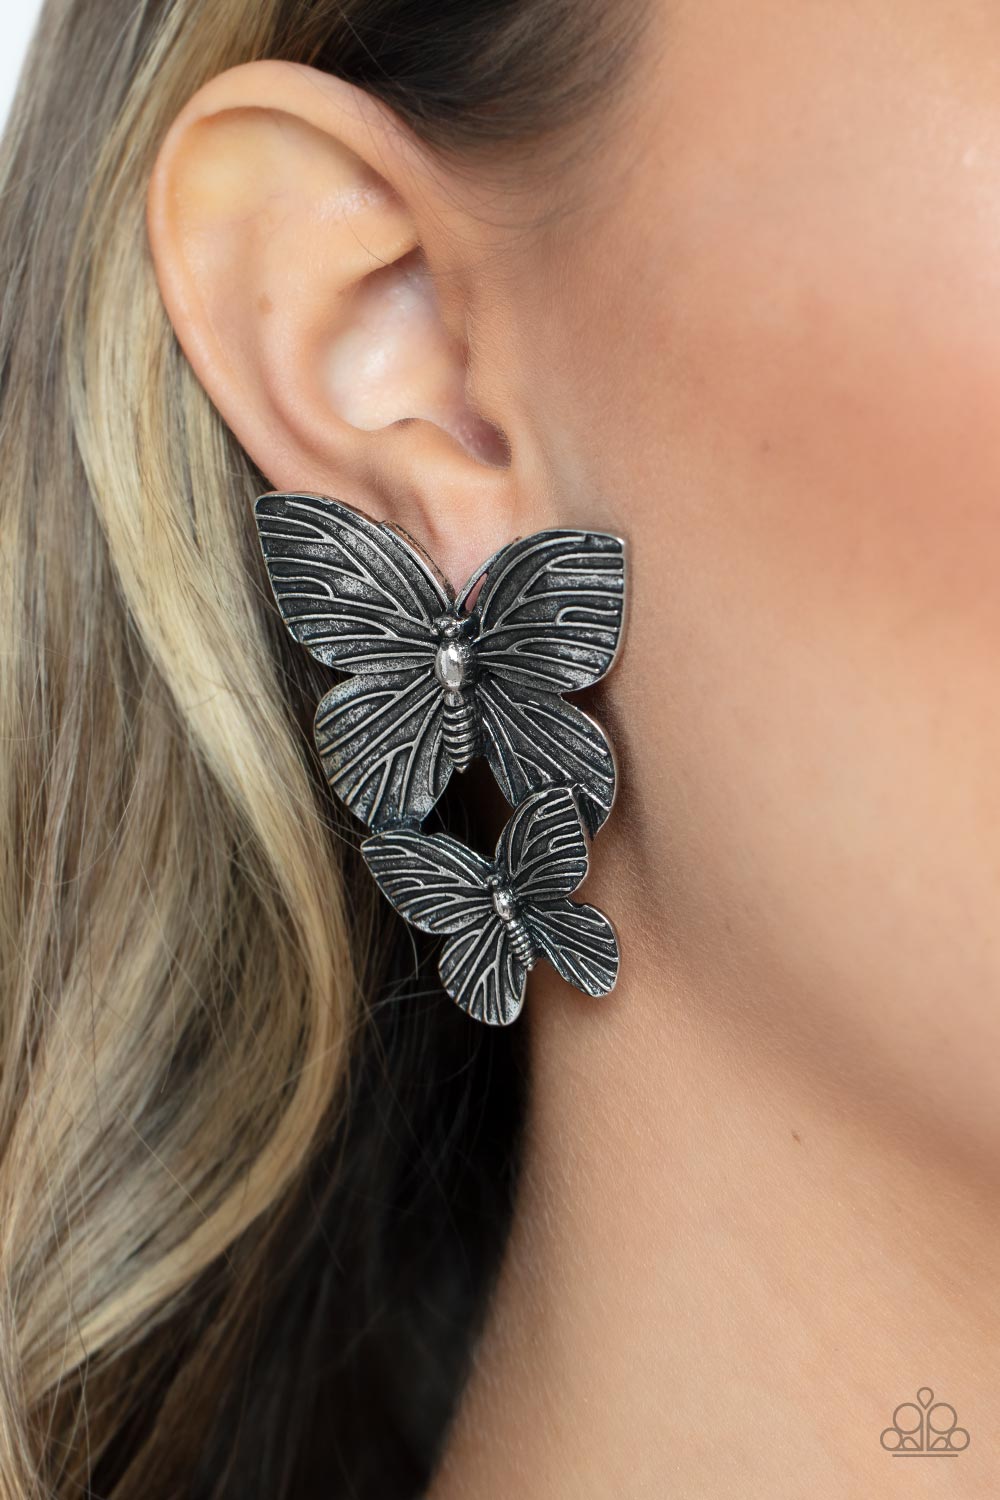 Blushing Butterflies - silver - Paparazzi earrings